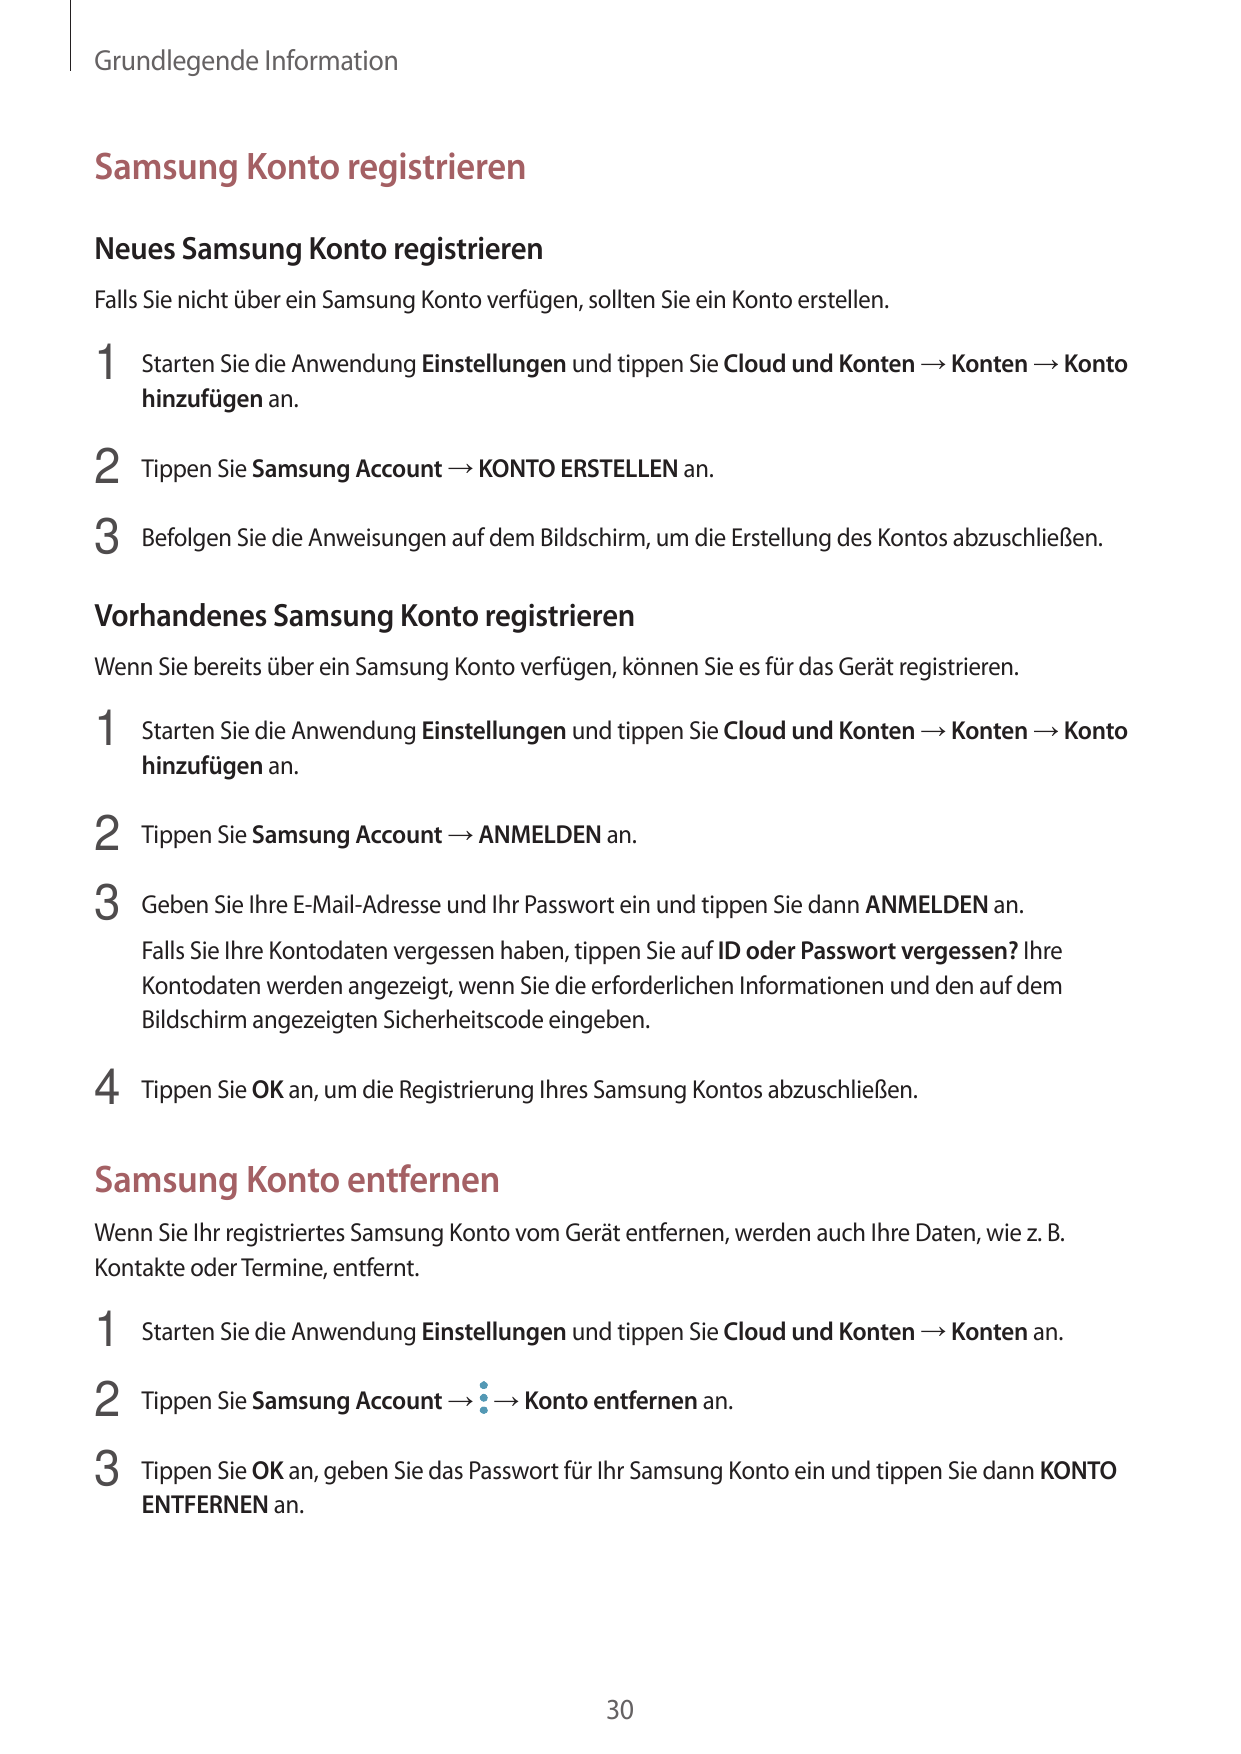 Grundlegende InformationSamsung Konto registrierenNeues Samsung Konto registrierenFalls Sie nicht über ein Samsung Konto verfüge